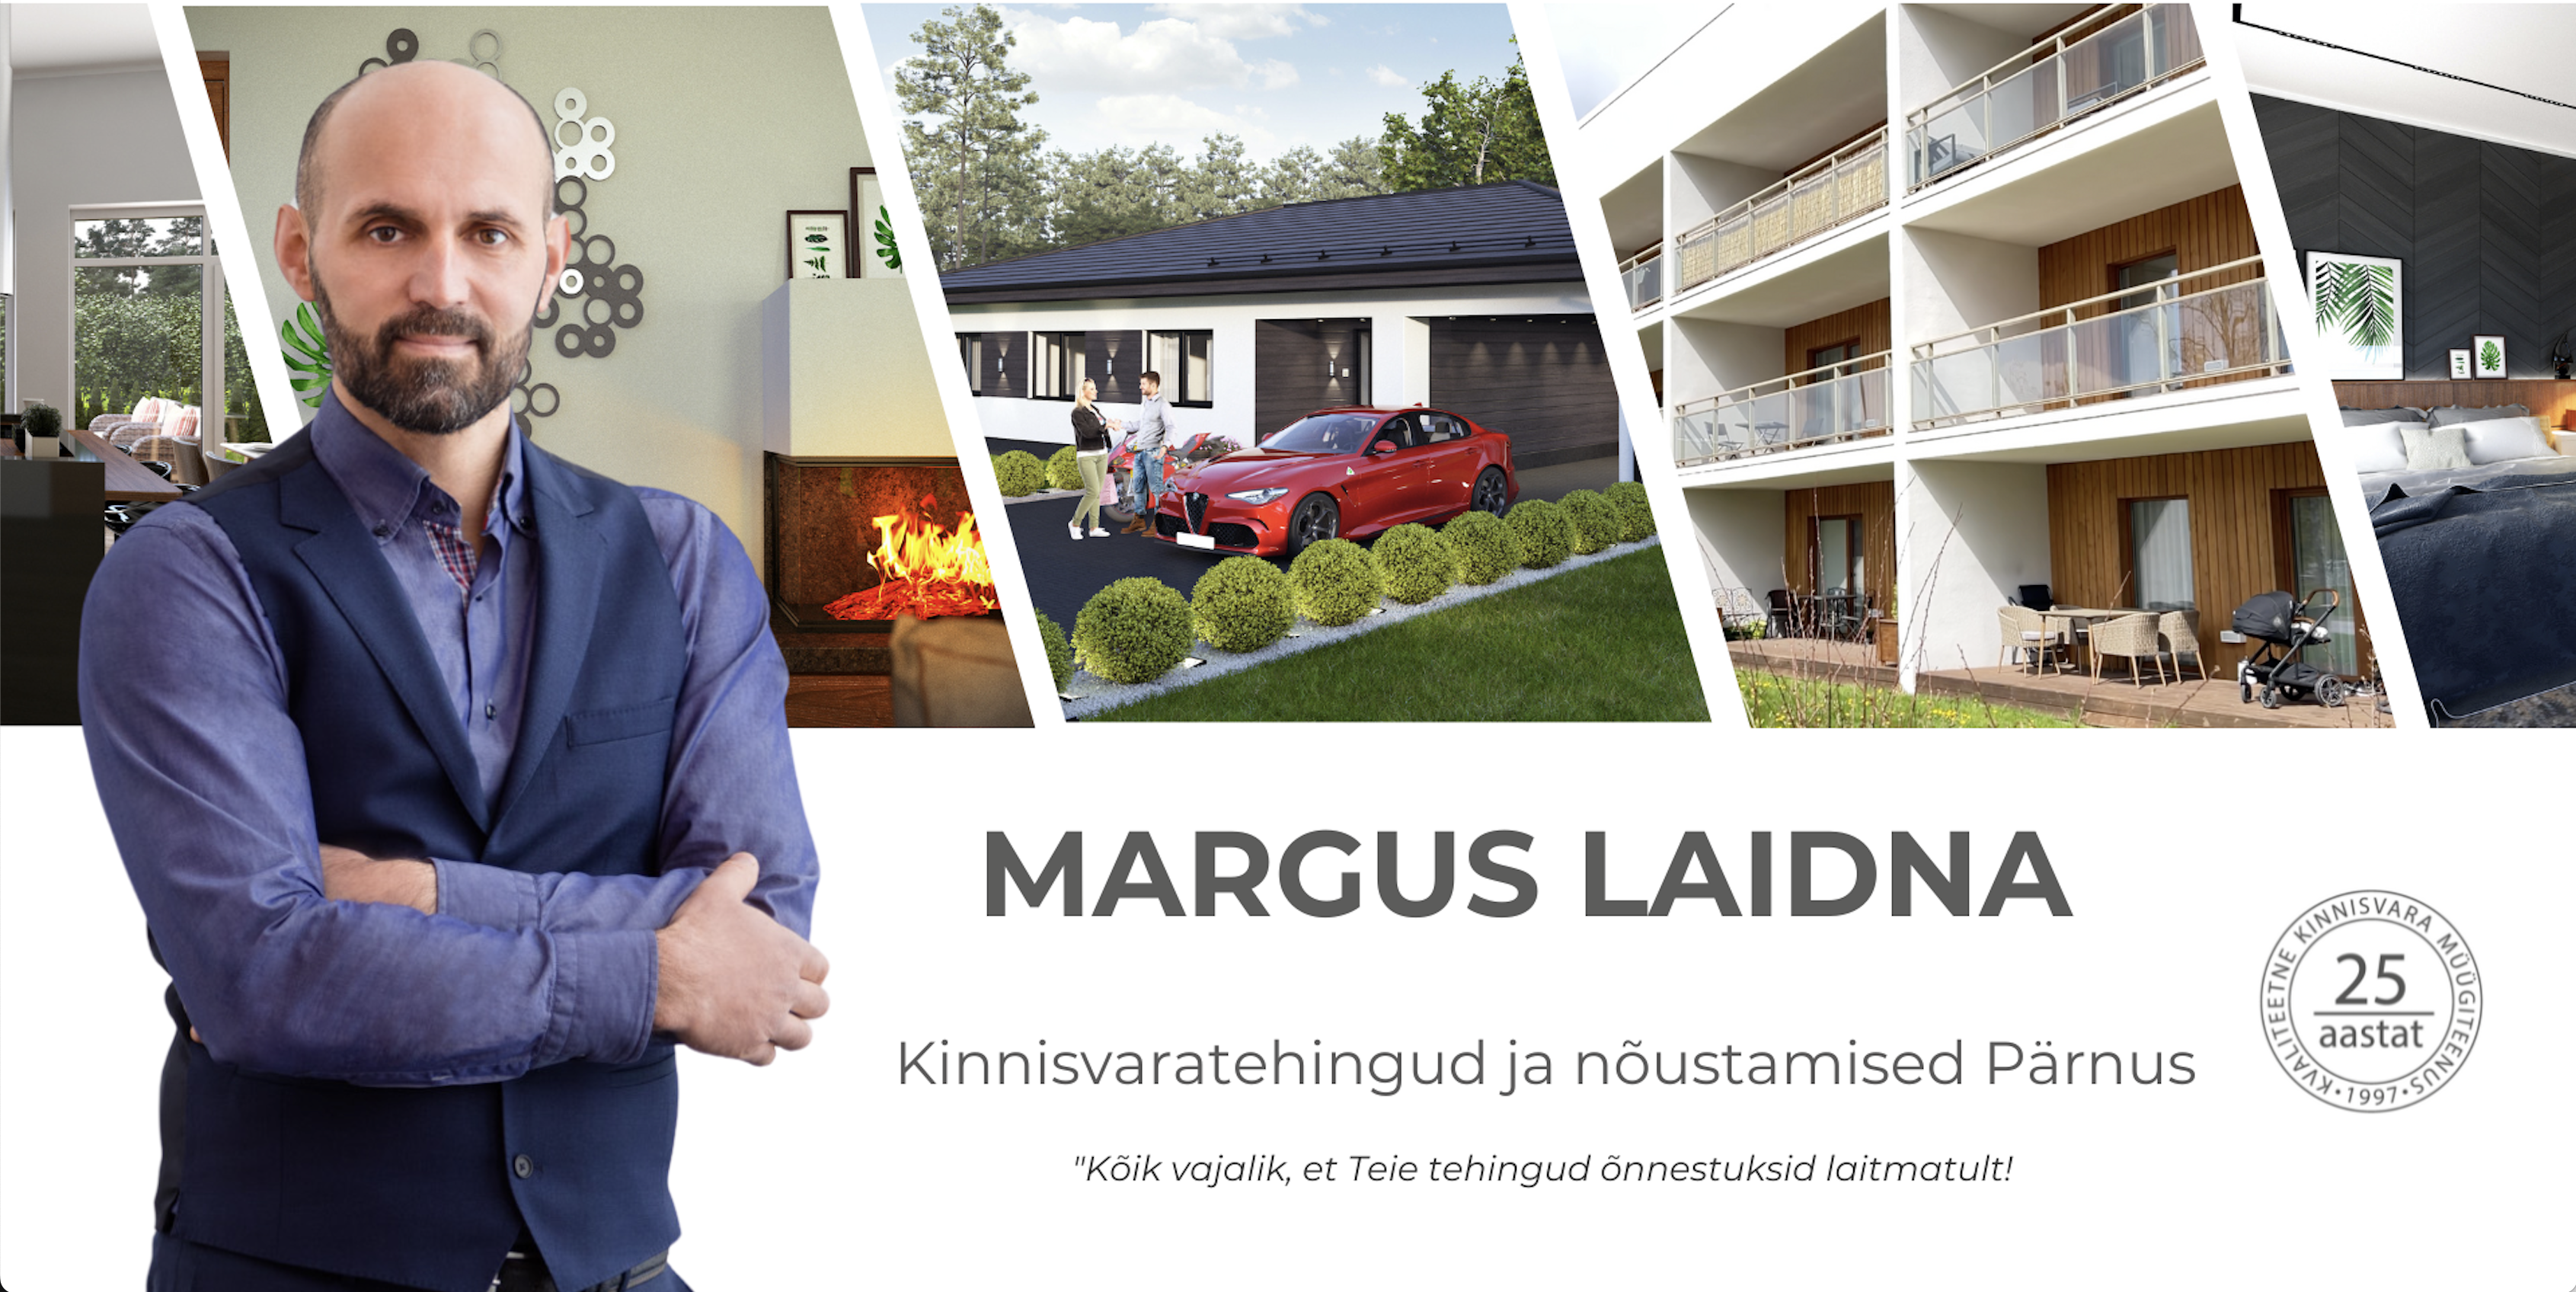 Margus Laidna, kinnisvaramüük ja nõustamised Pärnus